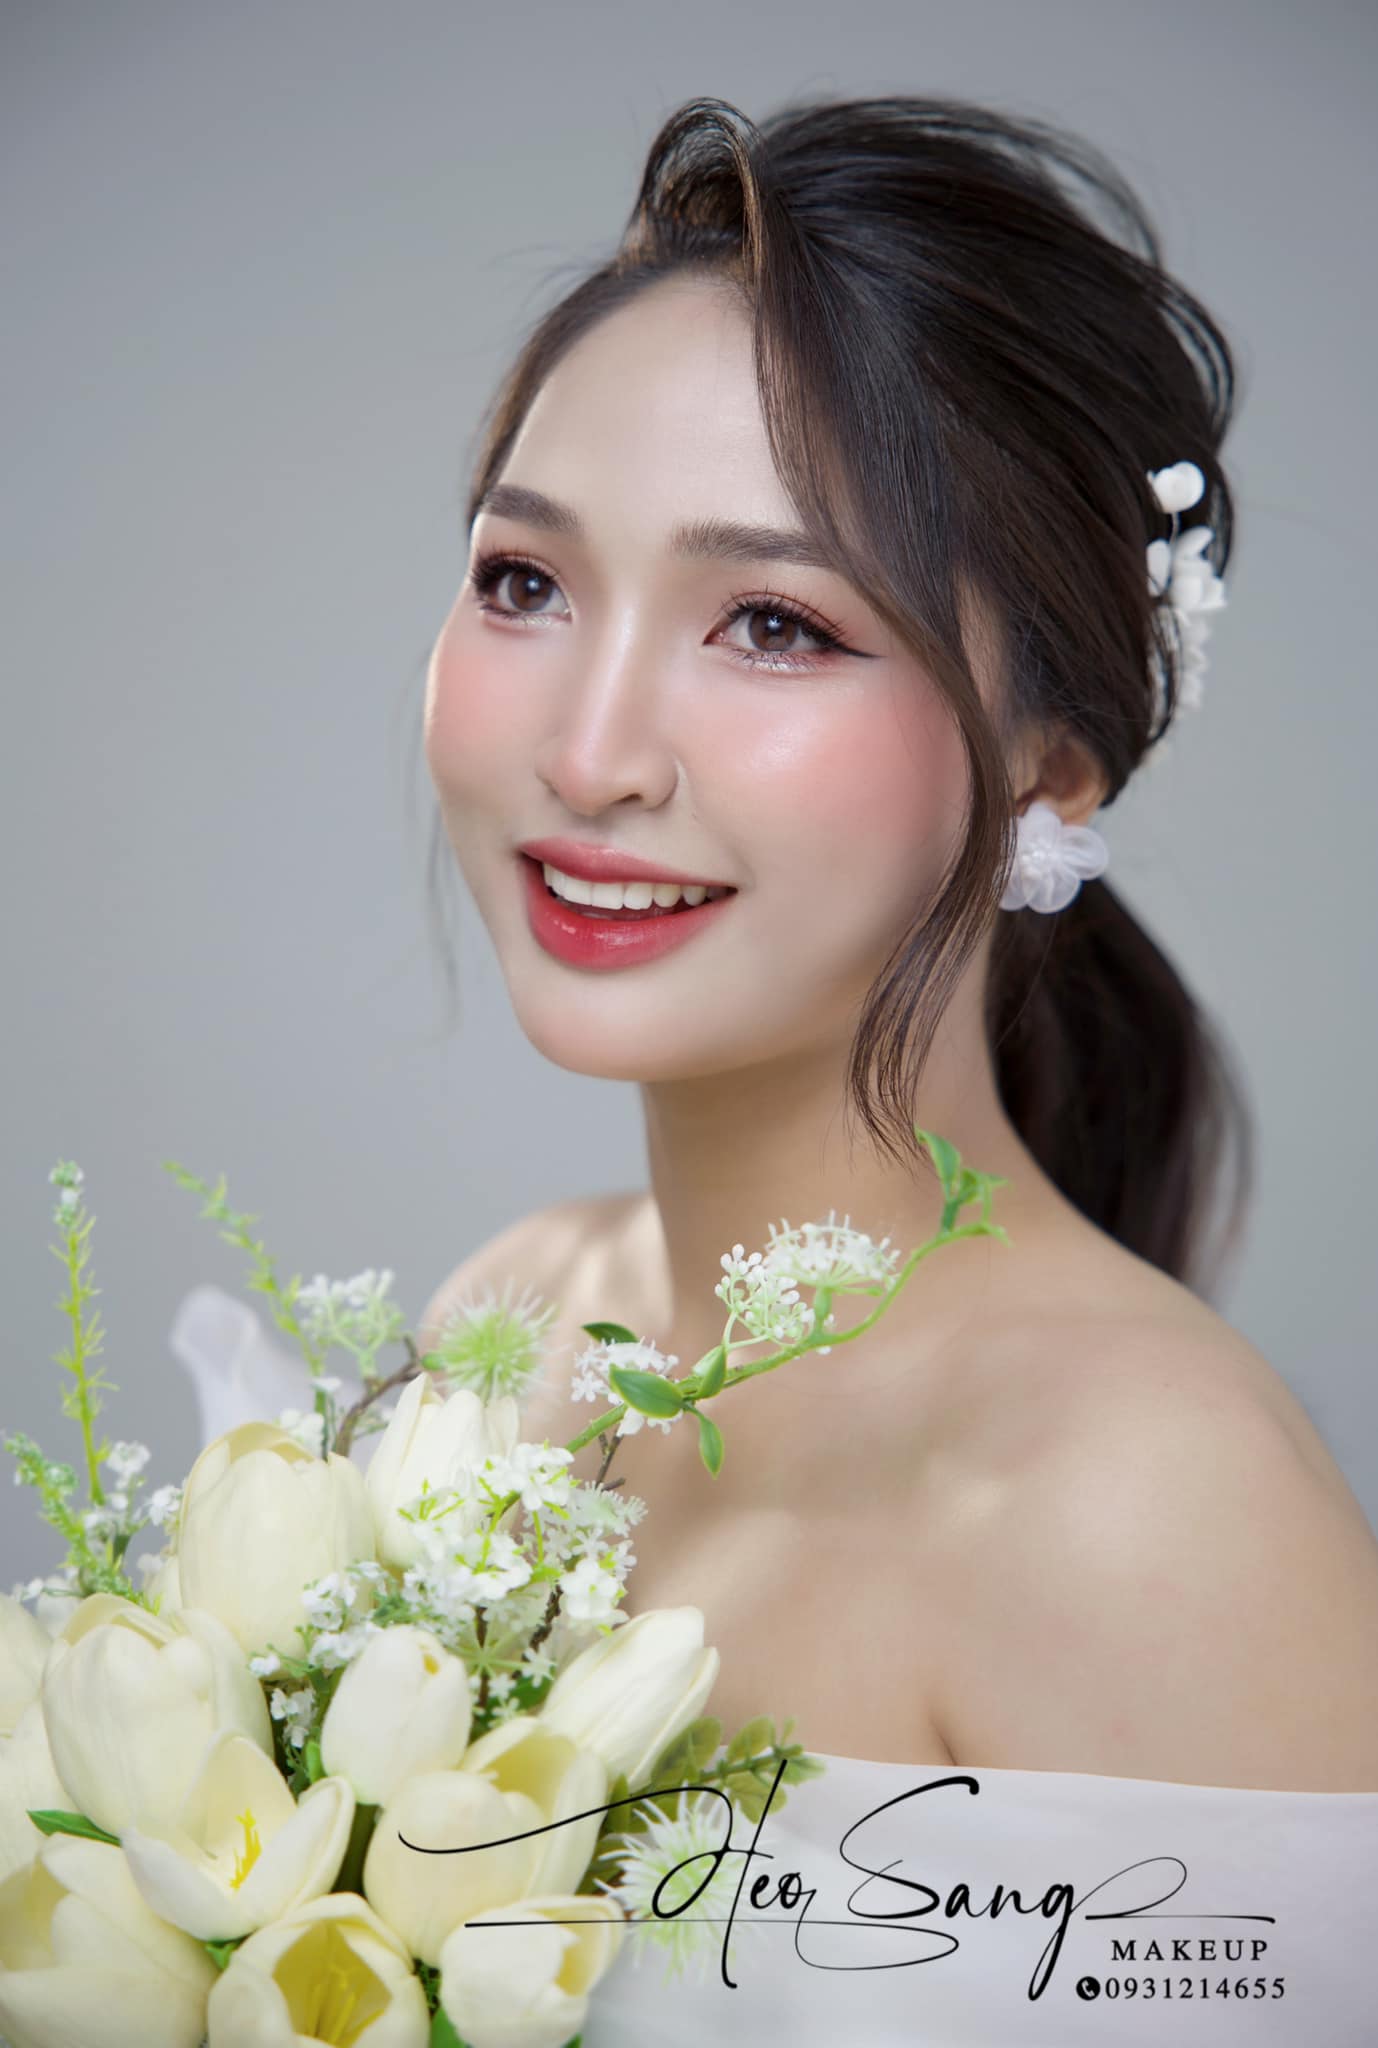 Heo Sang Makeup - Academy ảnh 2